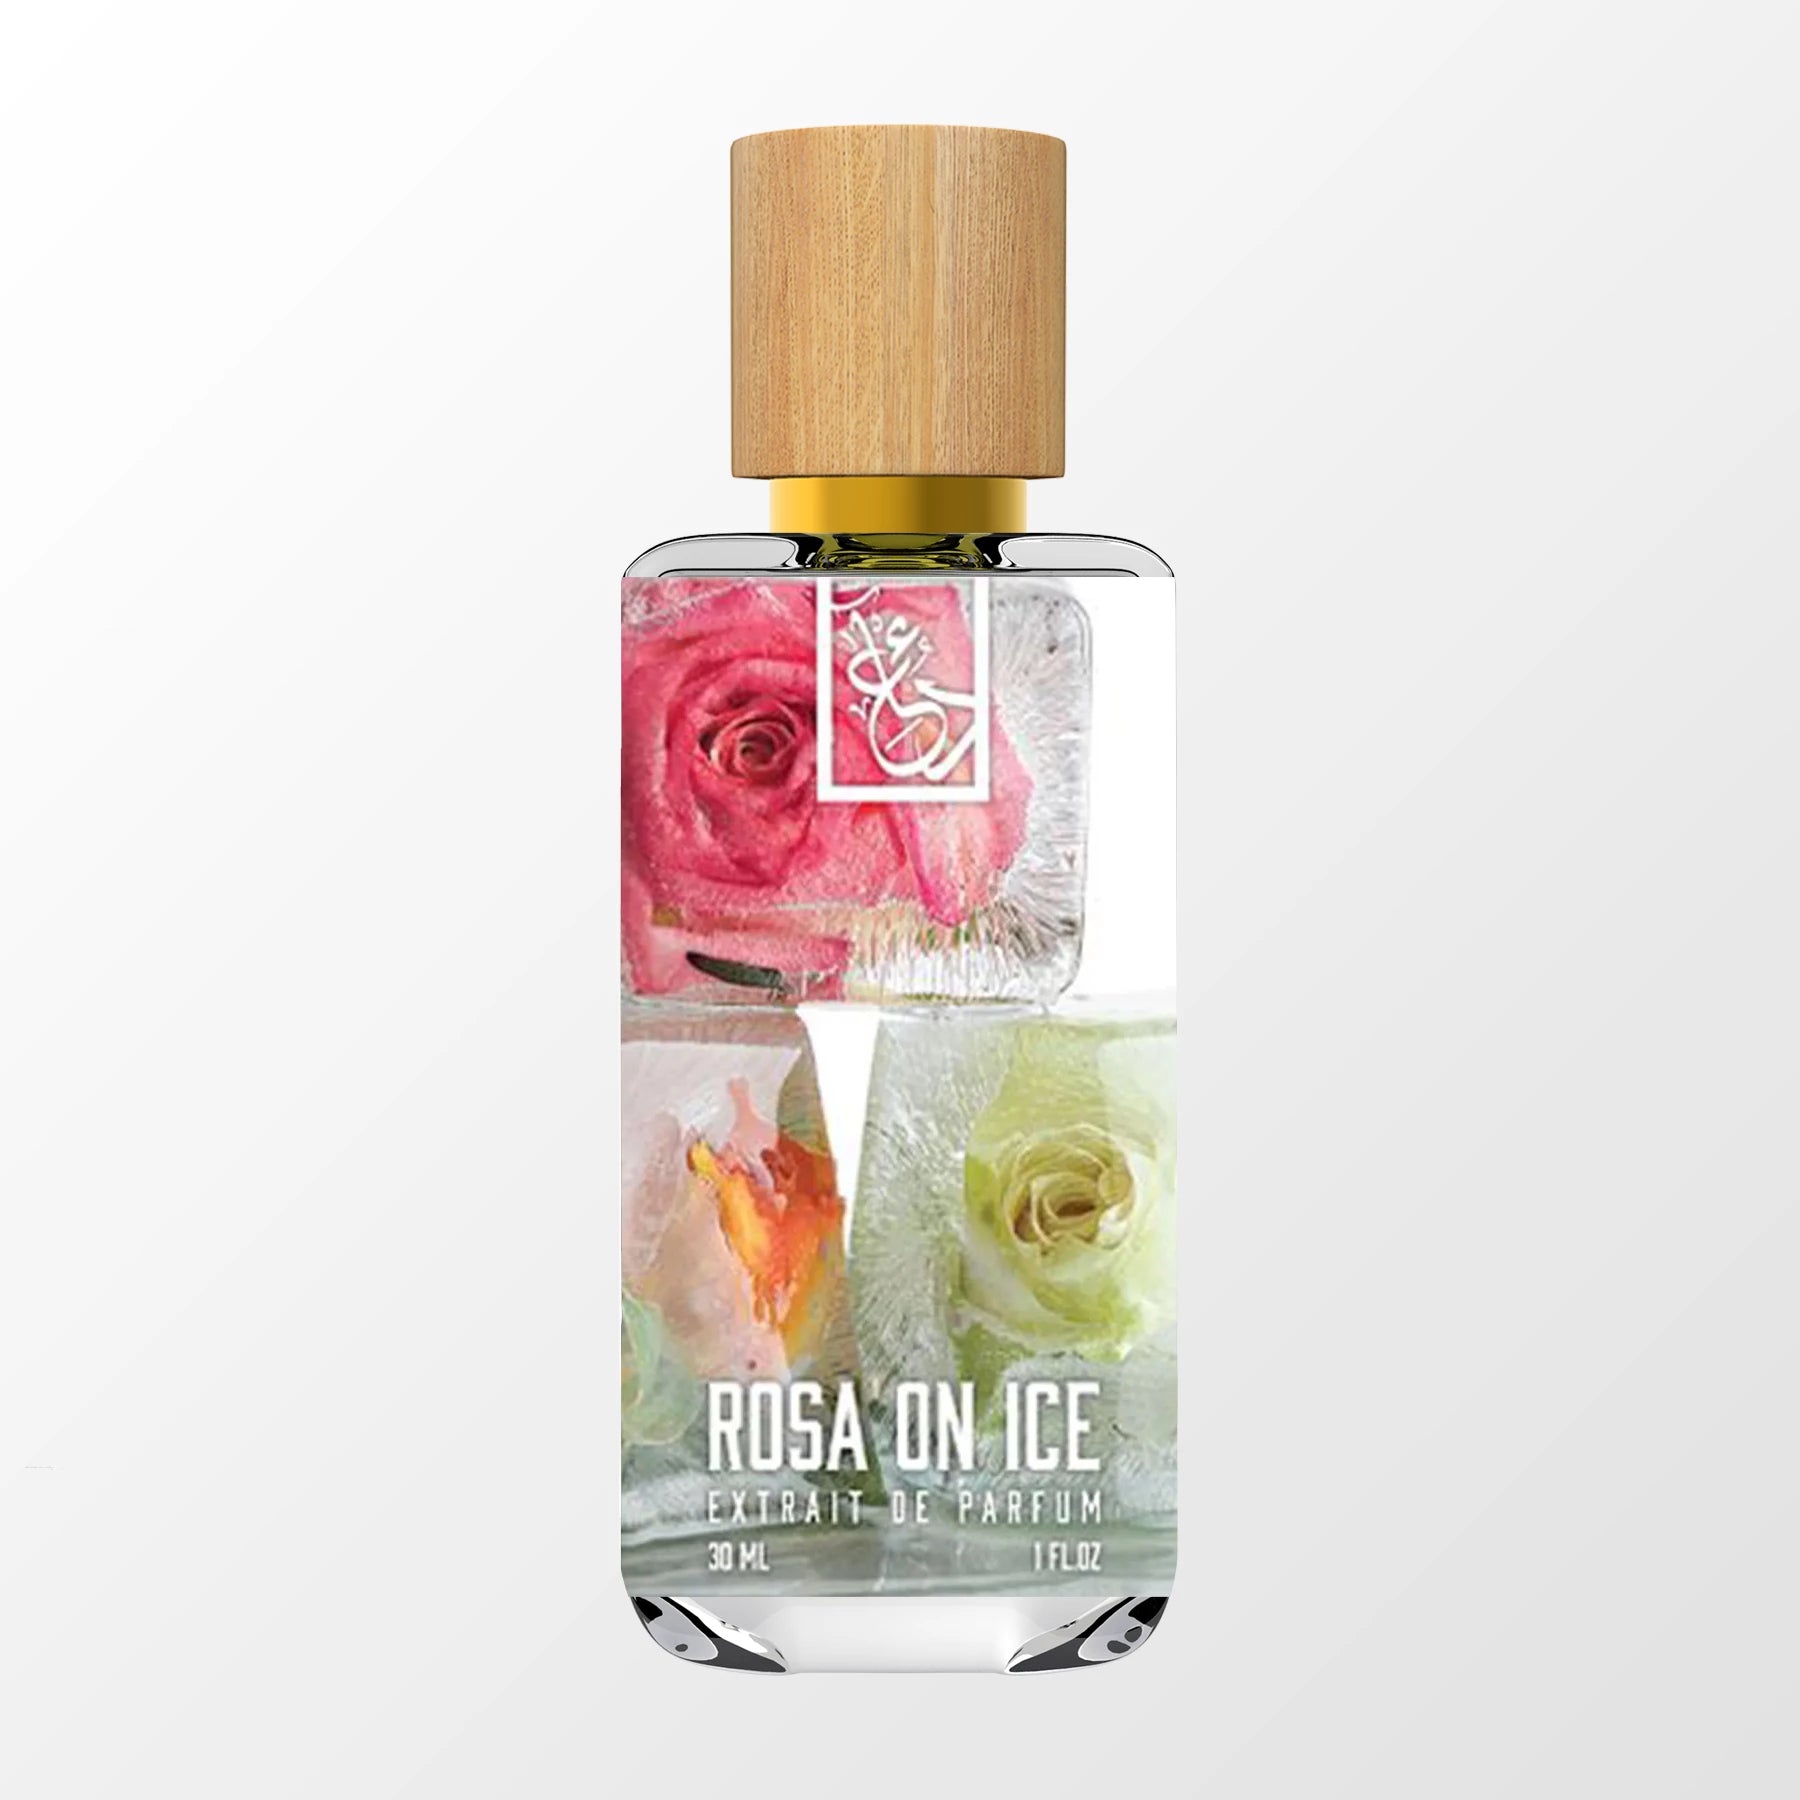 Kilian Roses on Ice Eau de Parfum